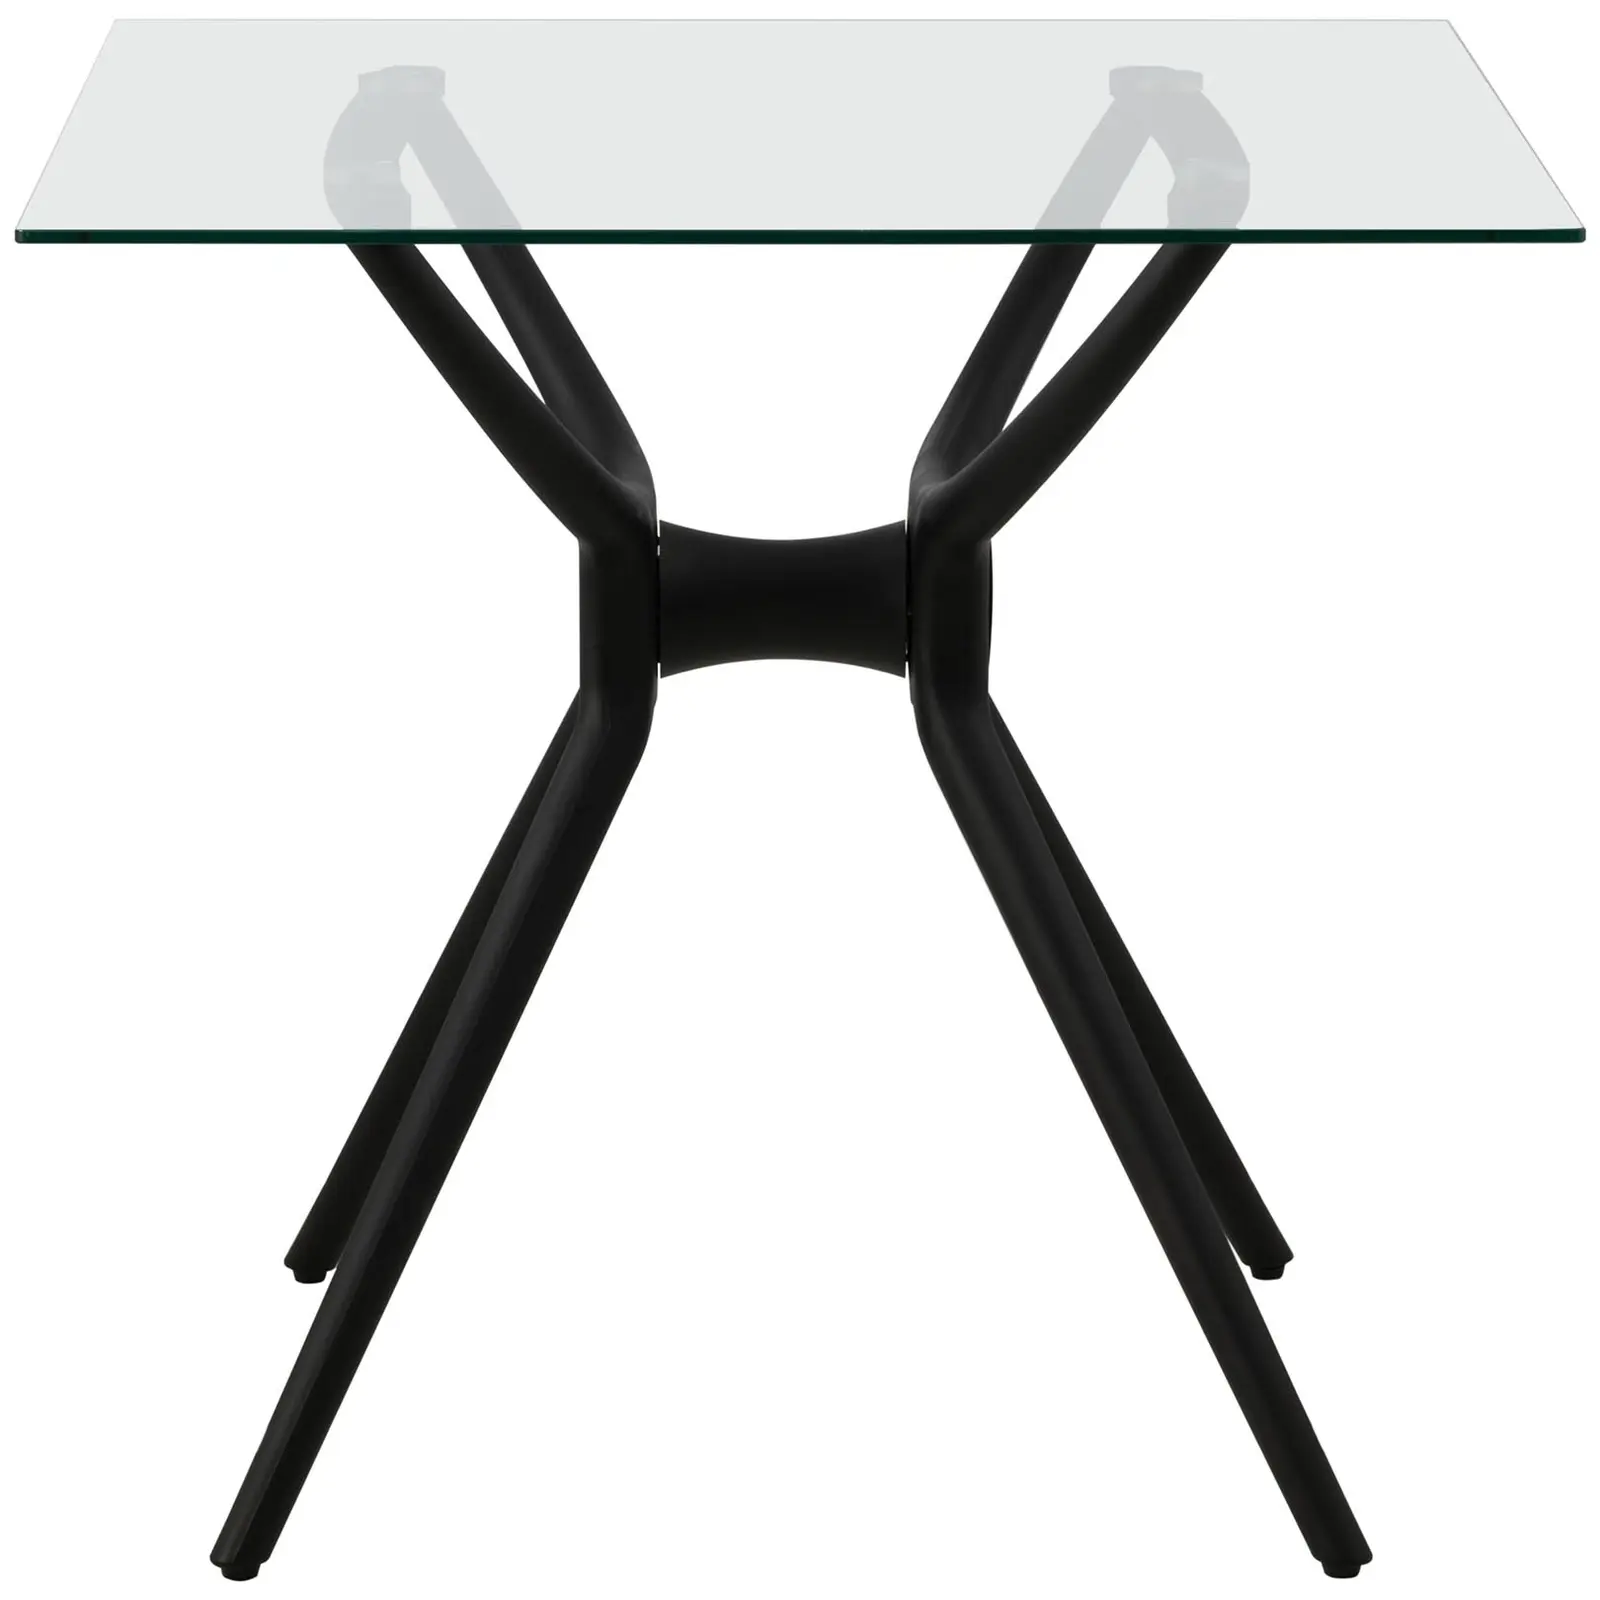 Stůl - čtvercový - 80 x 80 cm - skleněná deska